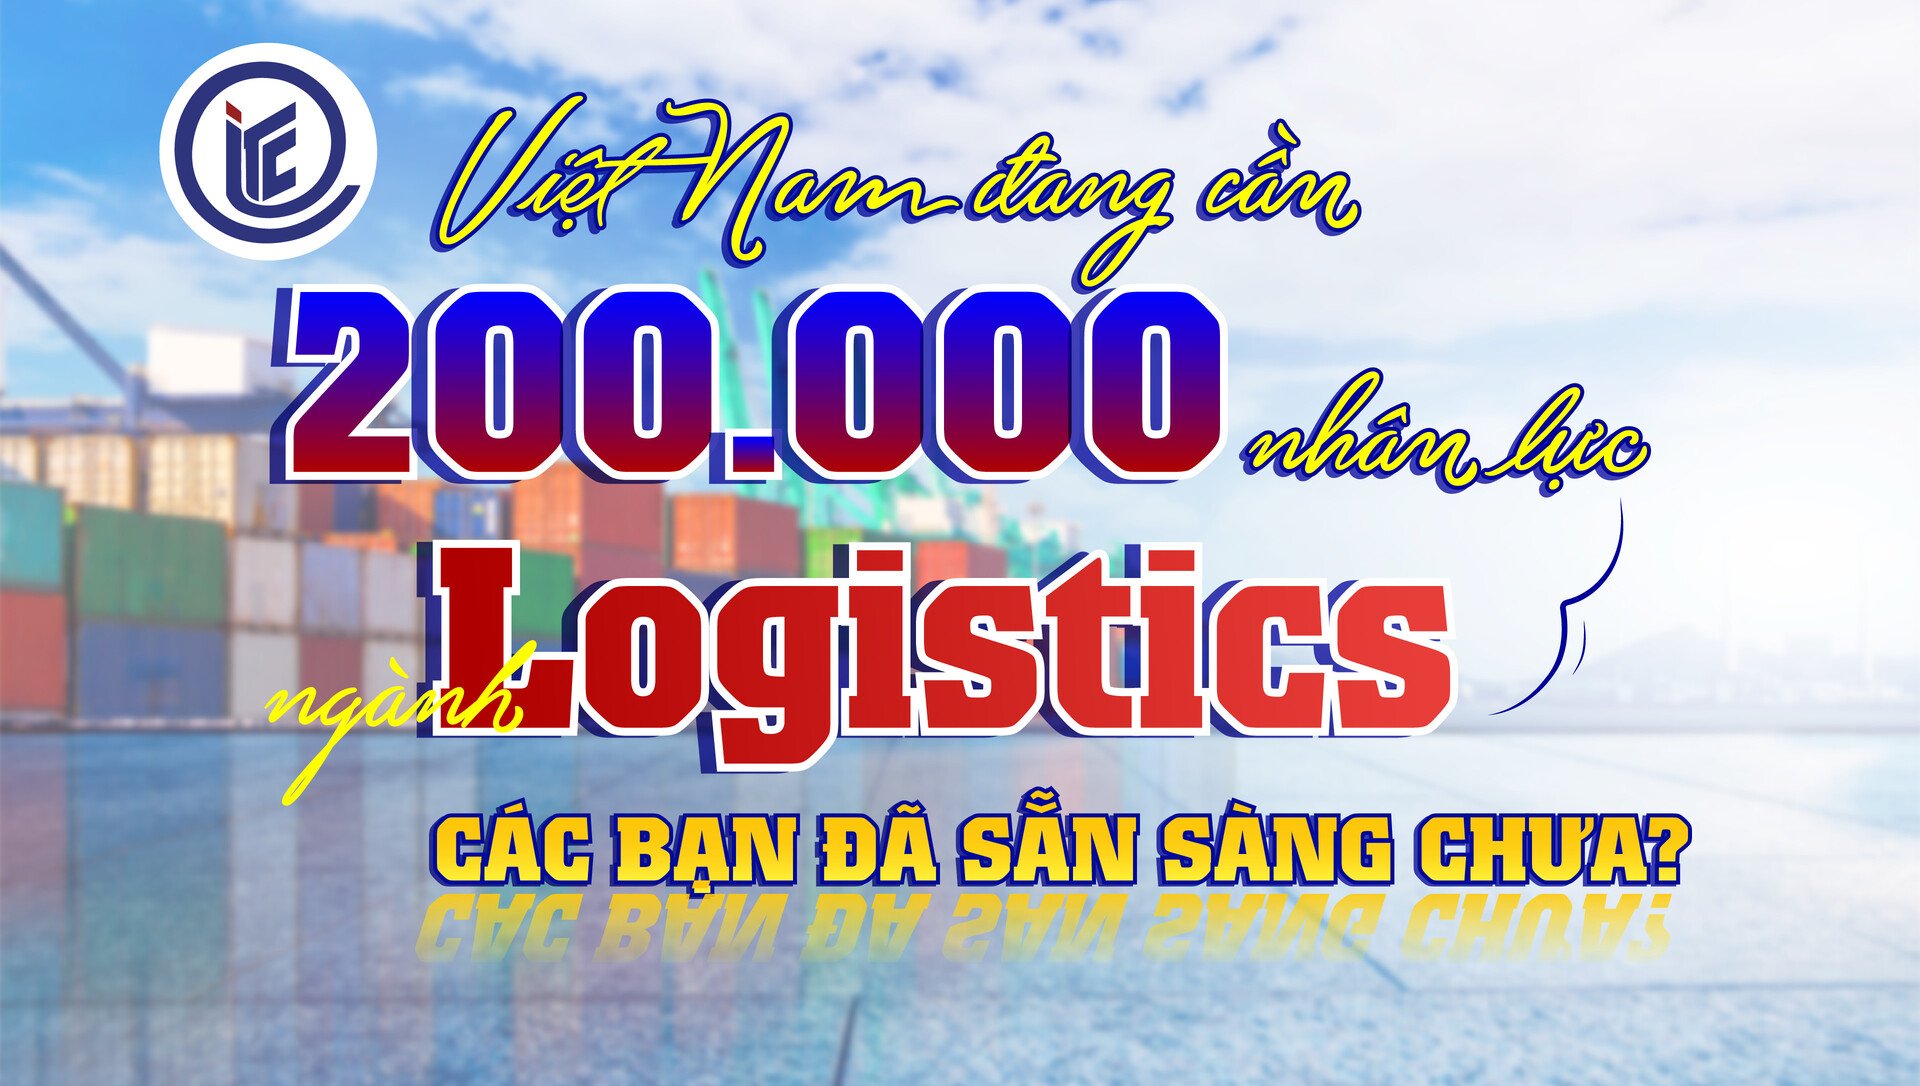 Việt Nam đang cần 200.000 nhân lực ngành Logistics, các bạn đã sẵn sàng chưa?